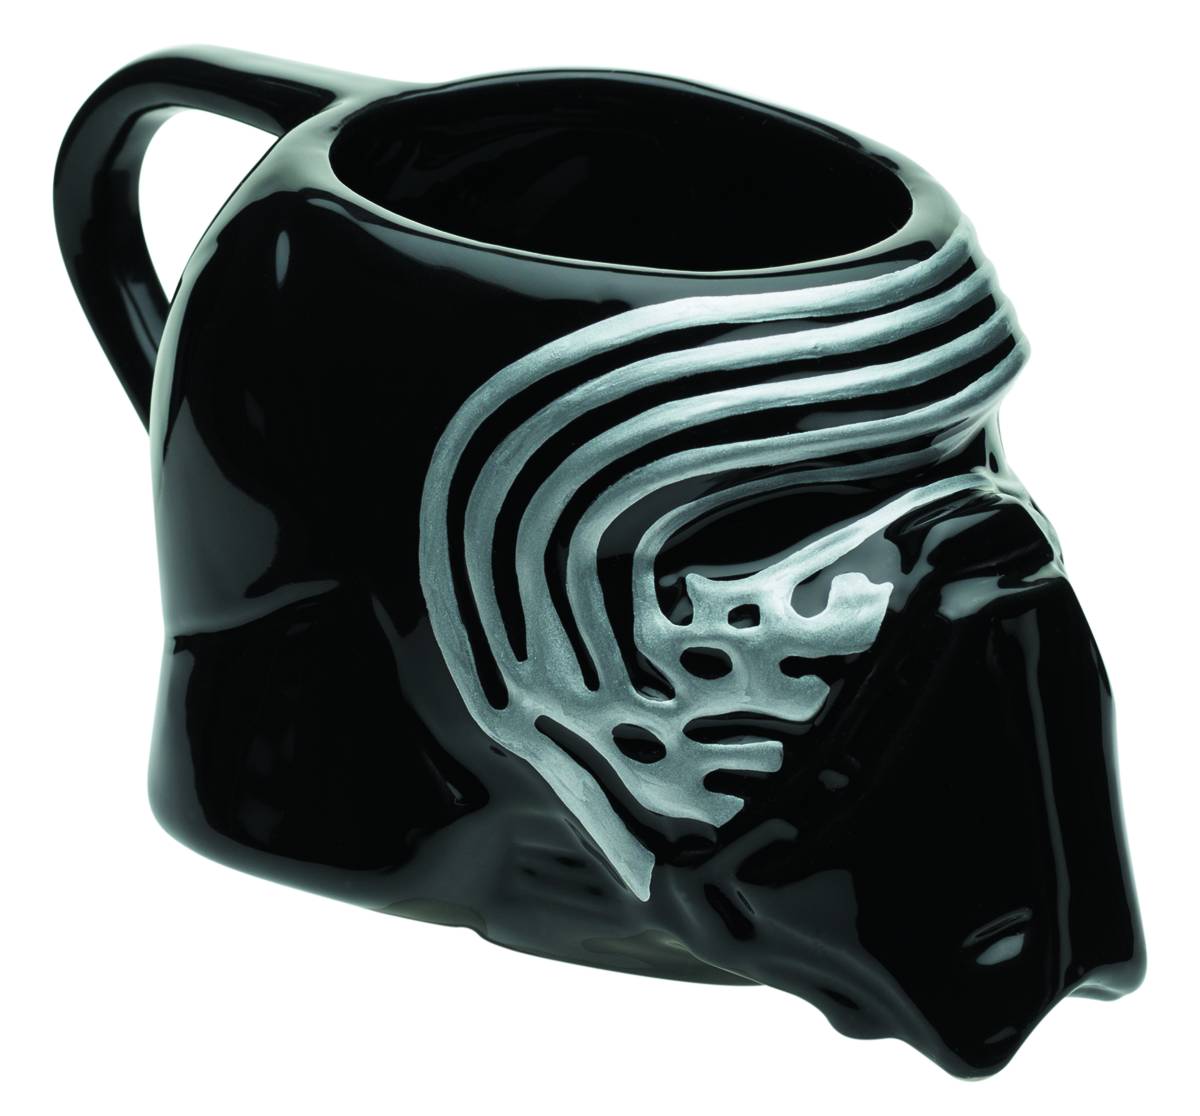 Star Wars The Last Jedi Resistance Helmet Premium Sculpted Ceramic Mug UNUSED 